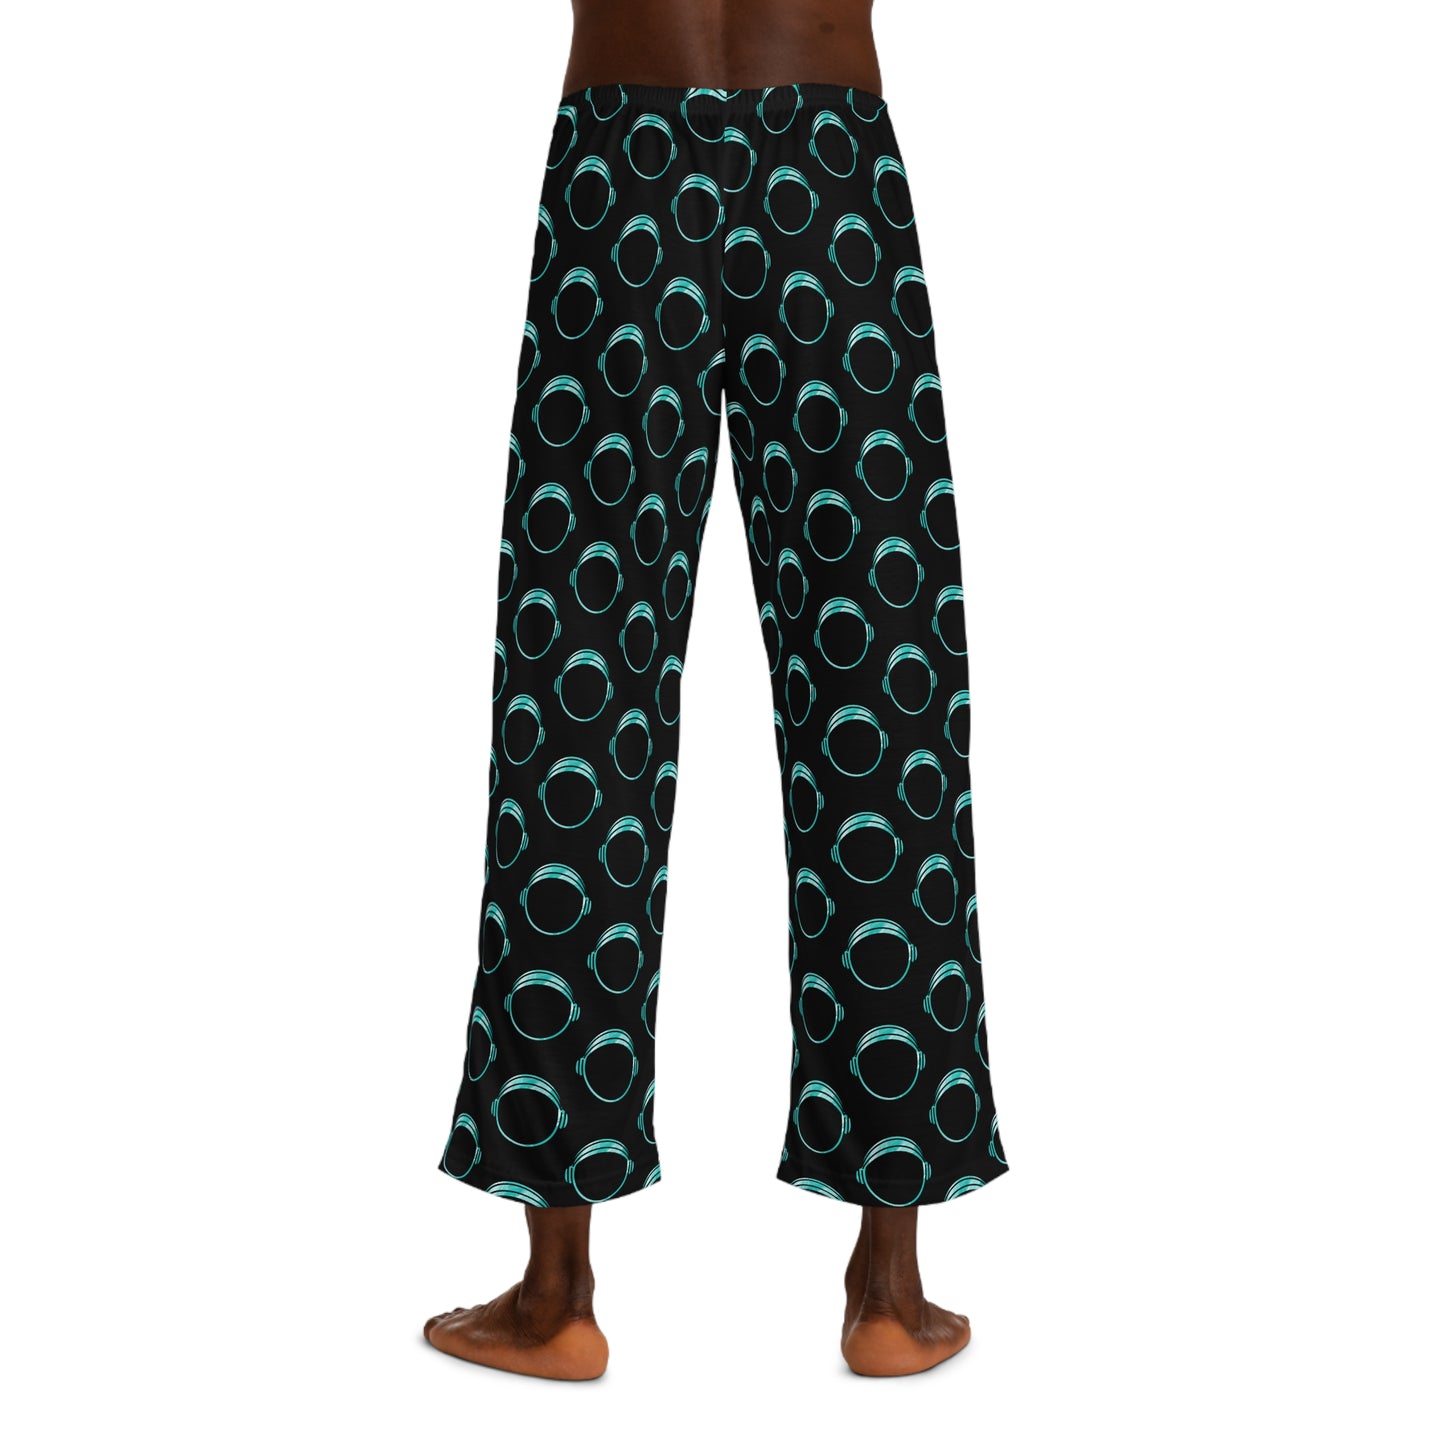 Men's Astro Pajamas